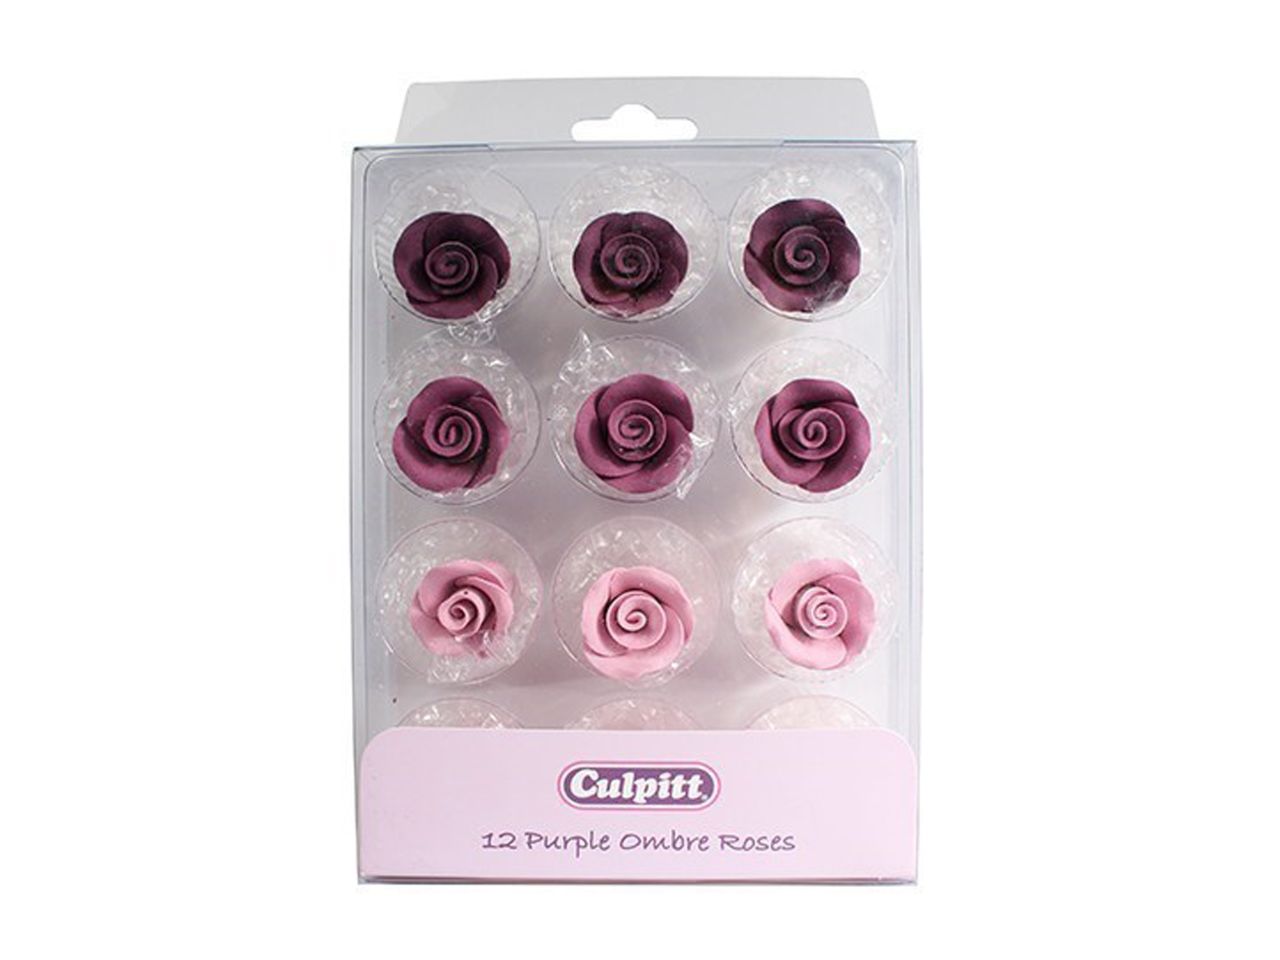 Culpitt: Zuckerblumen Violette Ombré-Rosen, 3 Lila-Töne, 12 Stück à 20 mm